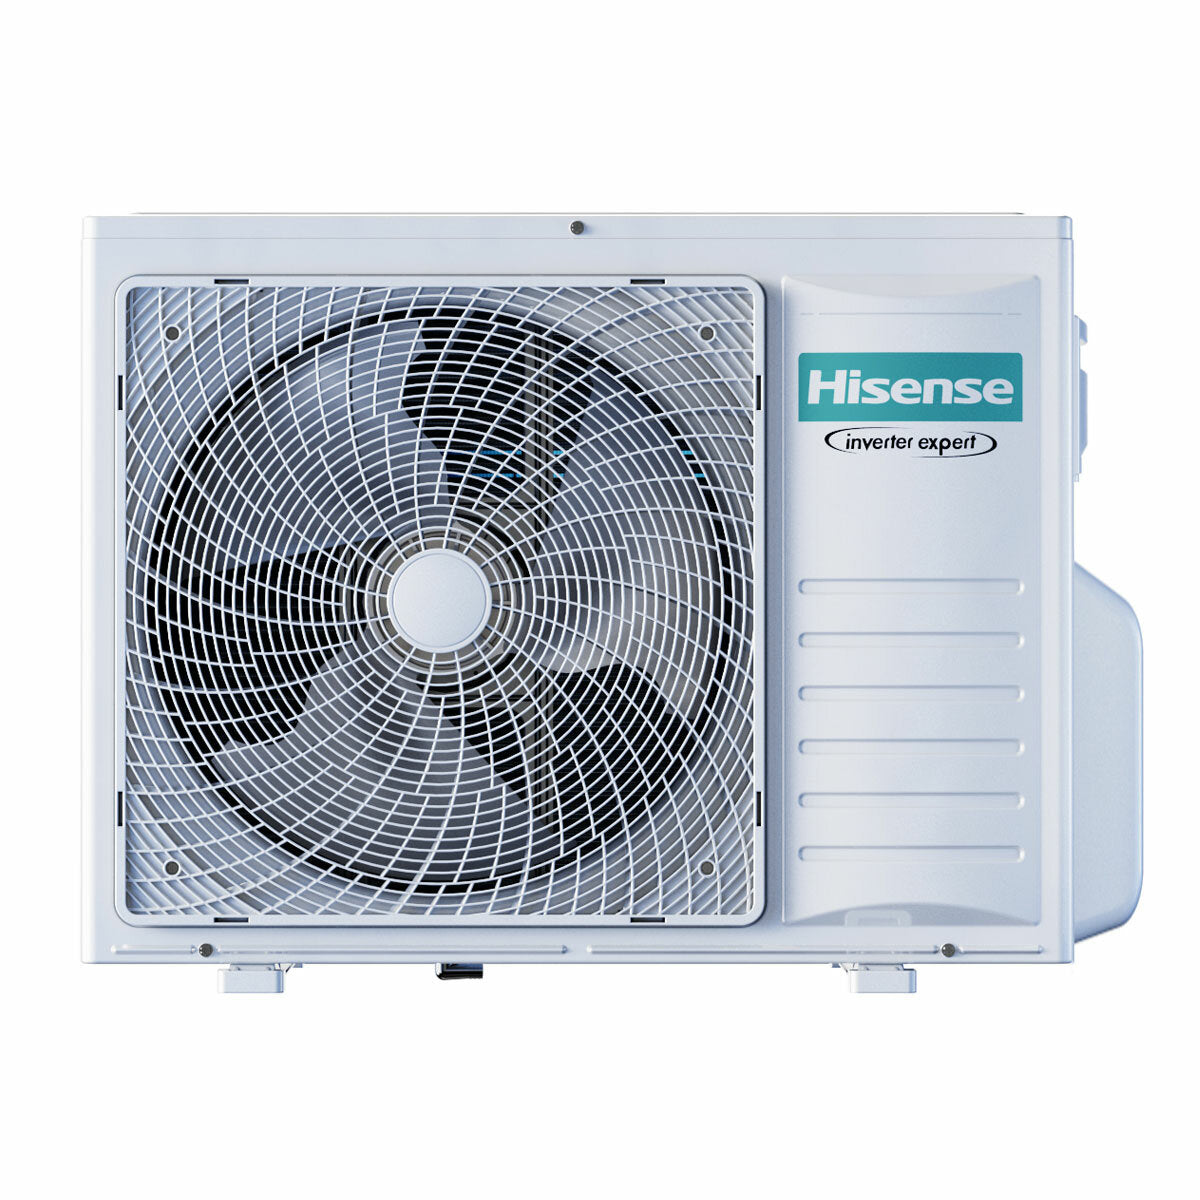 Hisense Hi-Comfort Quadri Split-Klimaanlage 7000 + 9000 + 9000 + 12000 BTU Inverter A++ WLAN-Außeneinheit 8 kW